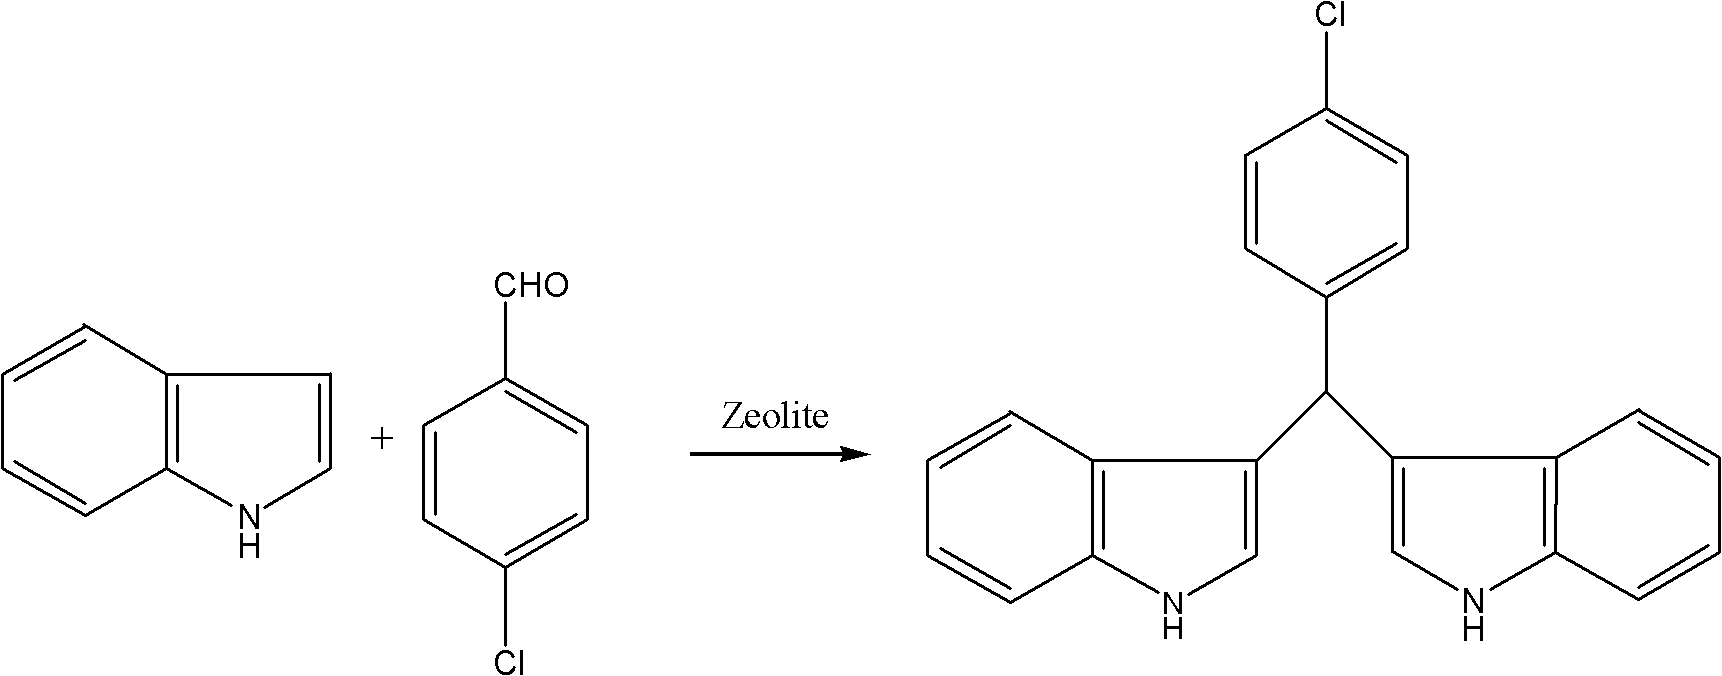 Method for synthesizing diindolylmethane derivative